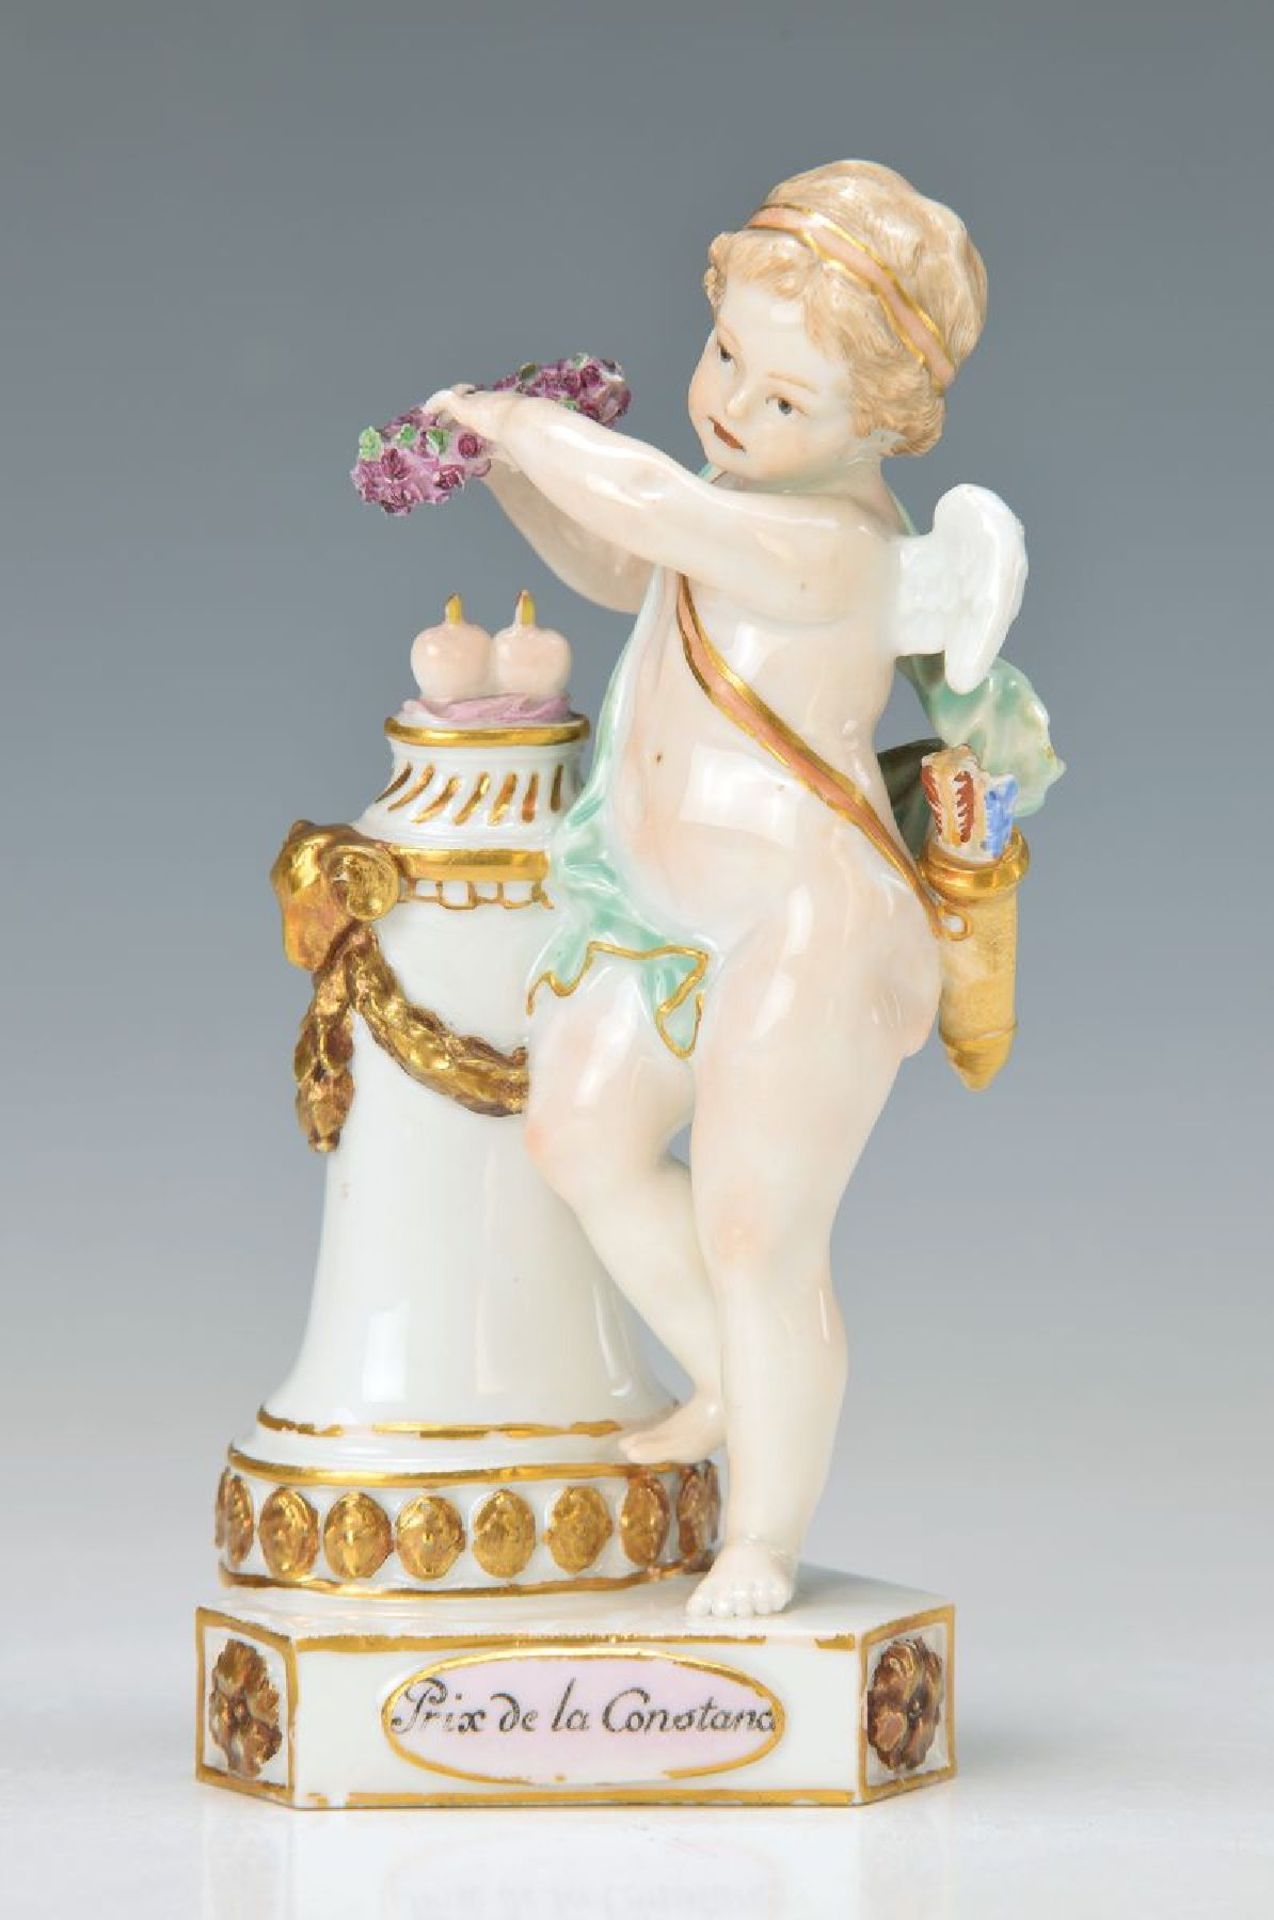 Porzellanfigur, Meissen, Marcolini, um 1773-1814, Devisenkind "Prix de la Constance", Amorette mit